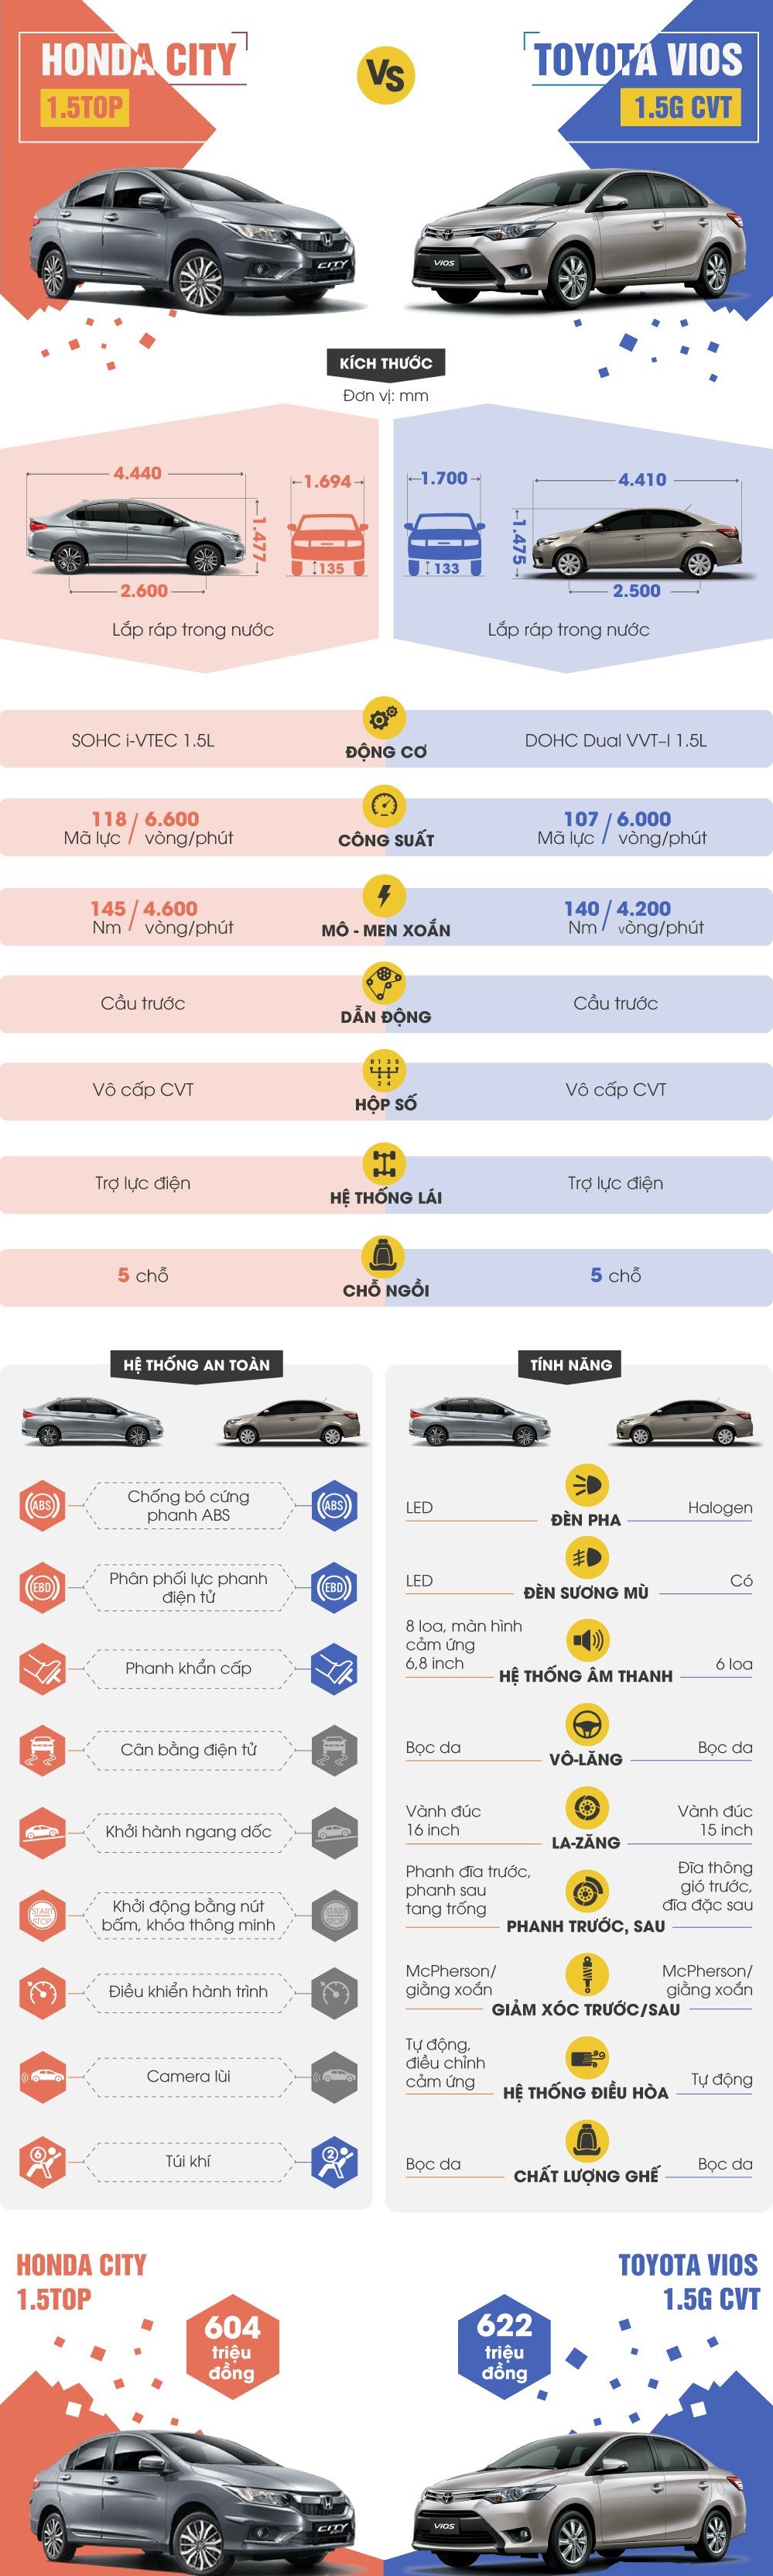 So sánh giữa hai mẫu xe Honda City và Toyota Vios